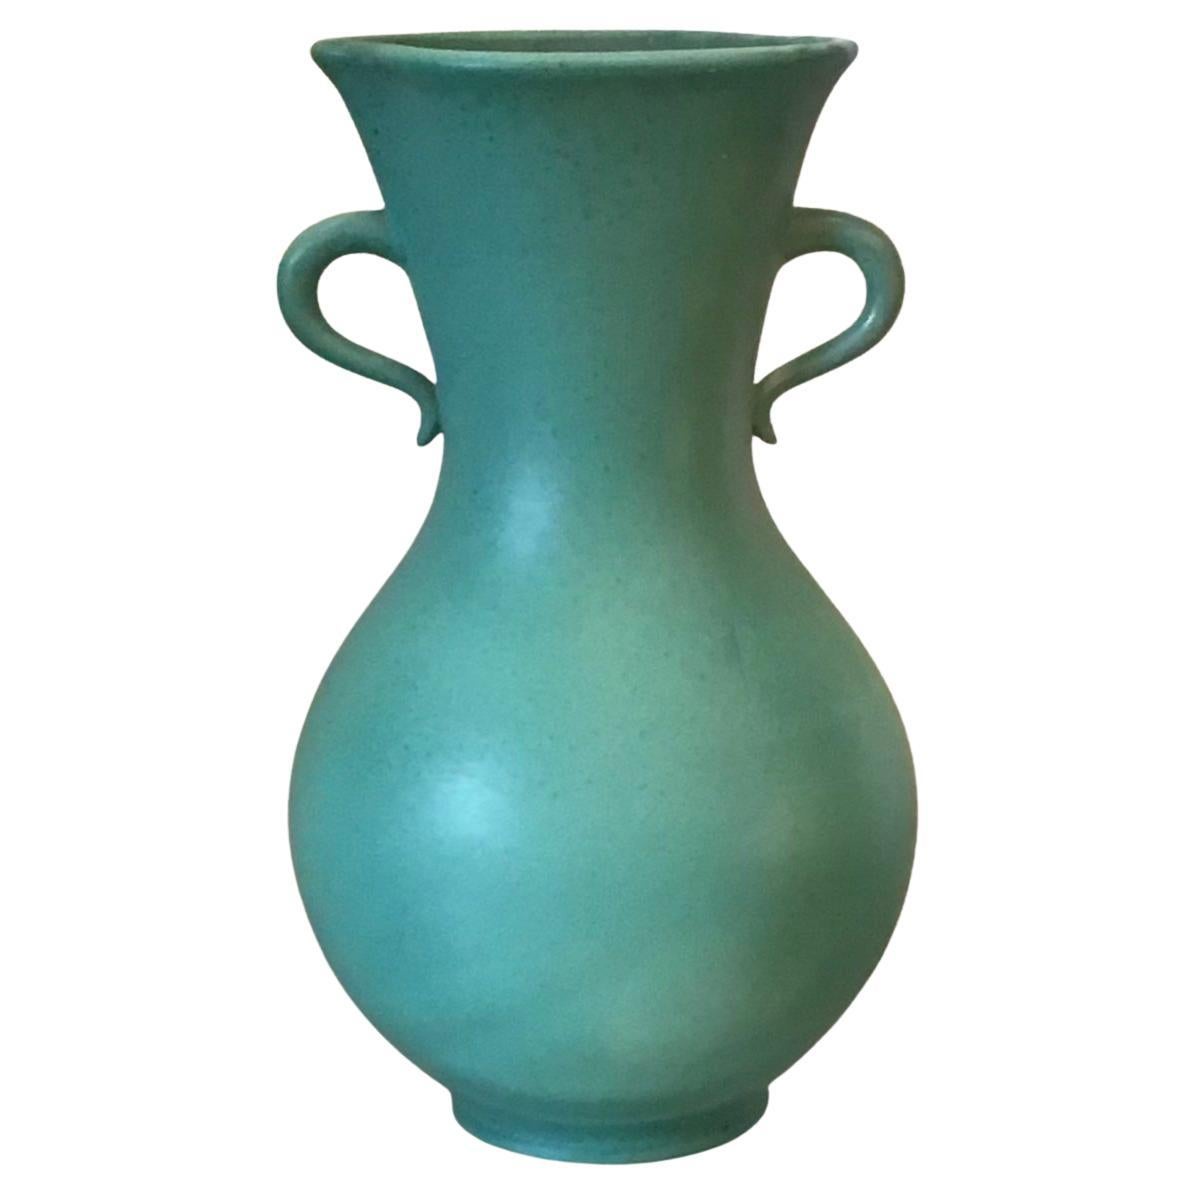 Richard Ginori Giovanni Gariboldi Vase Ceramic 1950 italy 